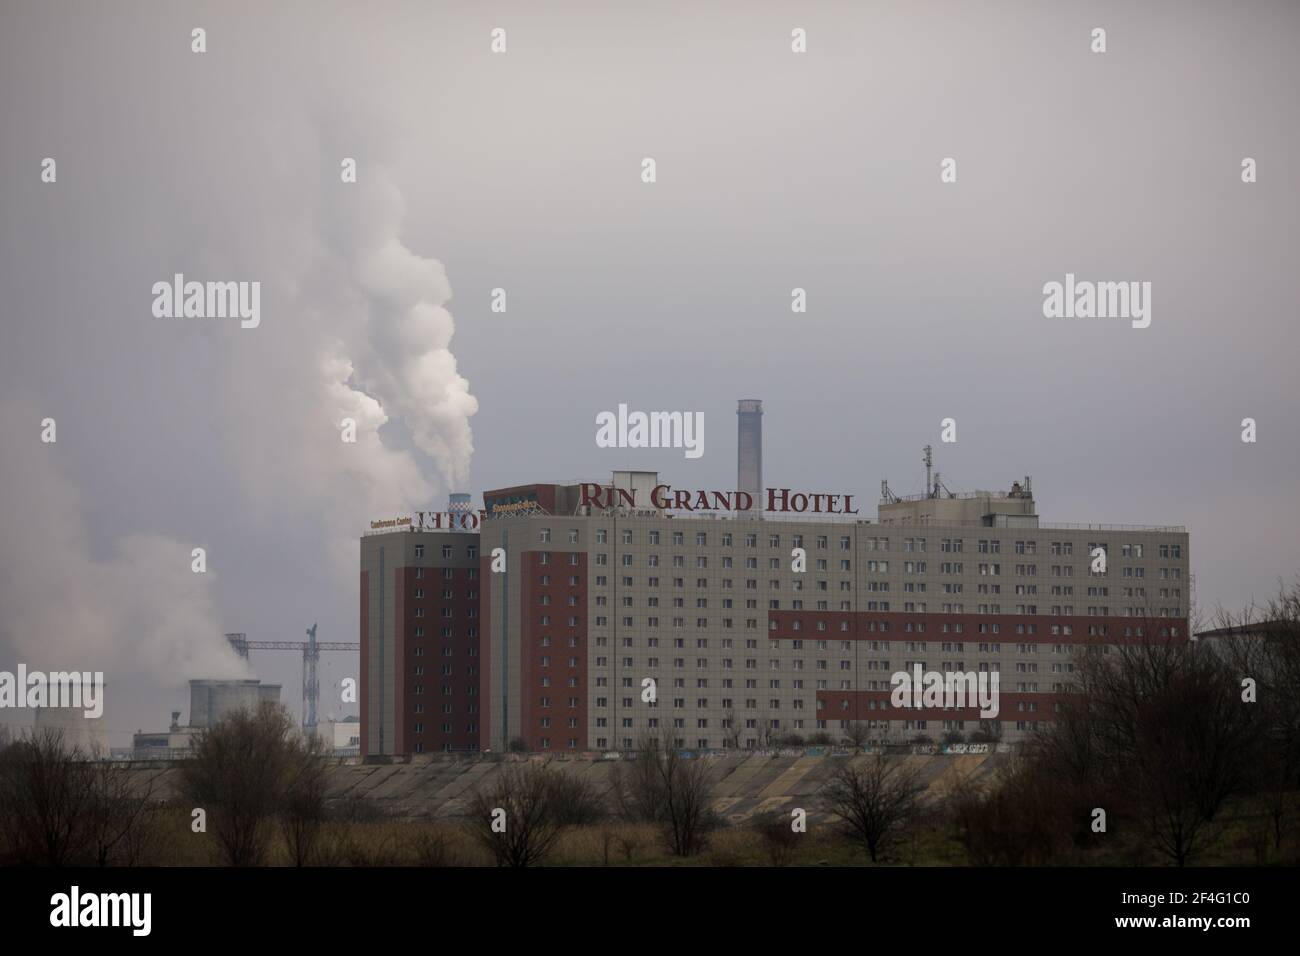 Bucarest, Roumanie - 20 mars 2021 : Rin Grand Hotel à Bucarest, avec une centrale électrique fumante en arrière-plan. Banque D'Images